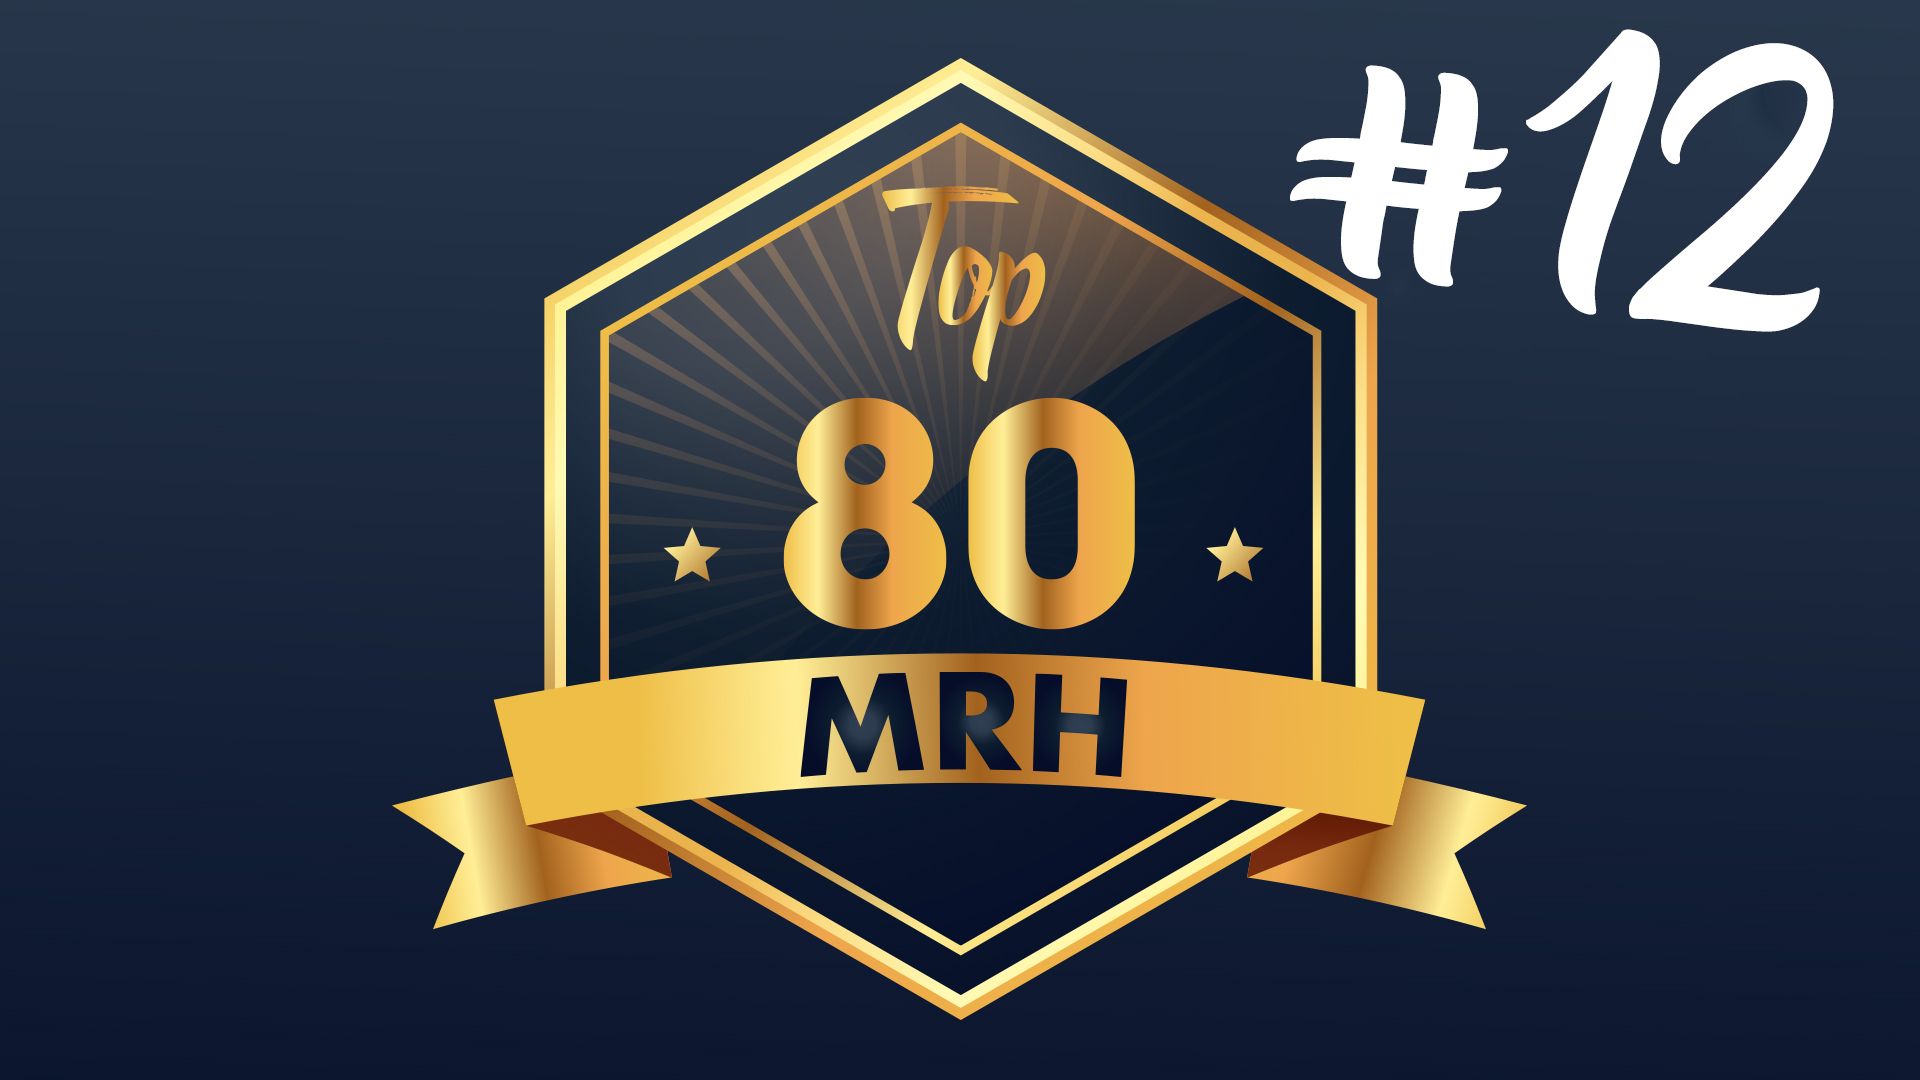 Top 80 MRH - Qui fera partie du 12e classement Top MRH